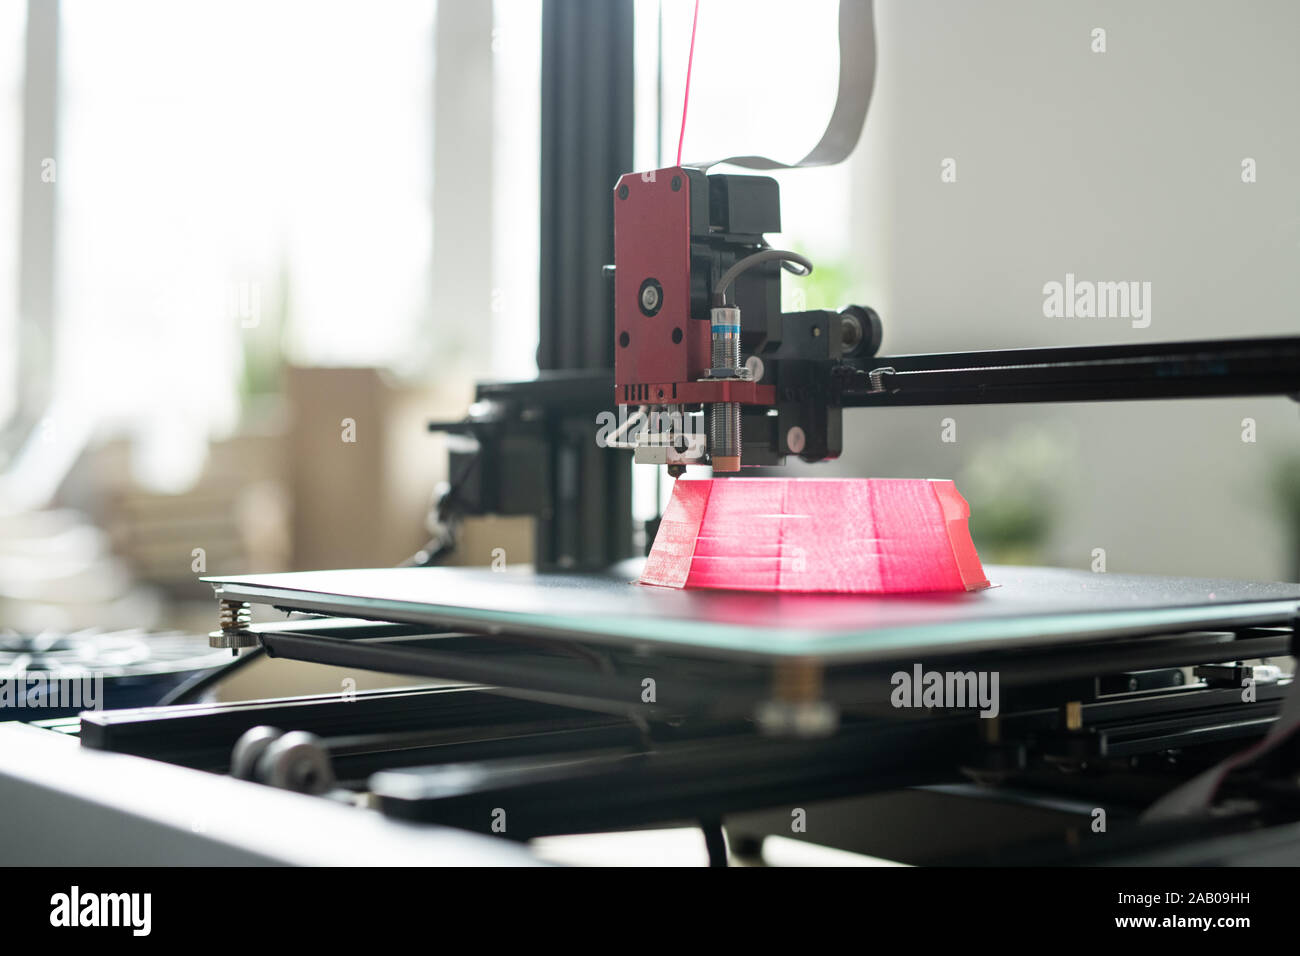 Druckkopf von 3d Drucker über Gründung der Rosa runde Objekt auf Arbeitsschicht während des Druckens Stockfoto